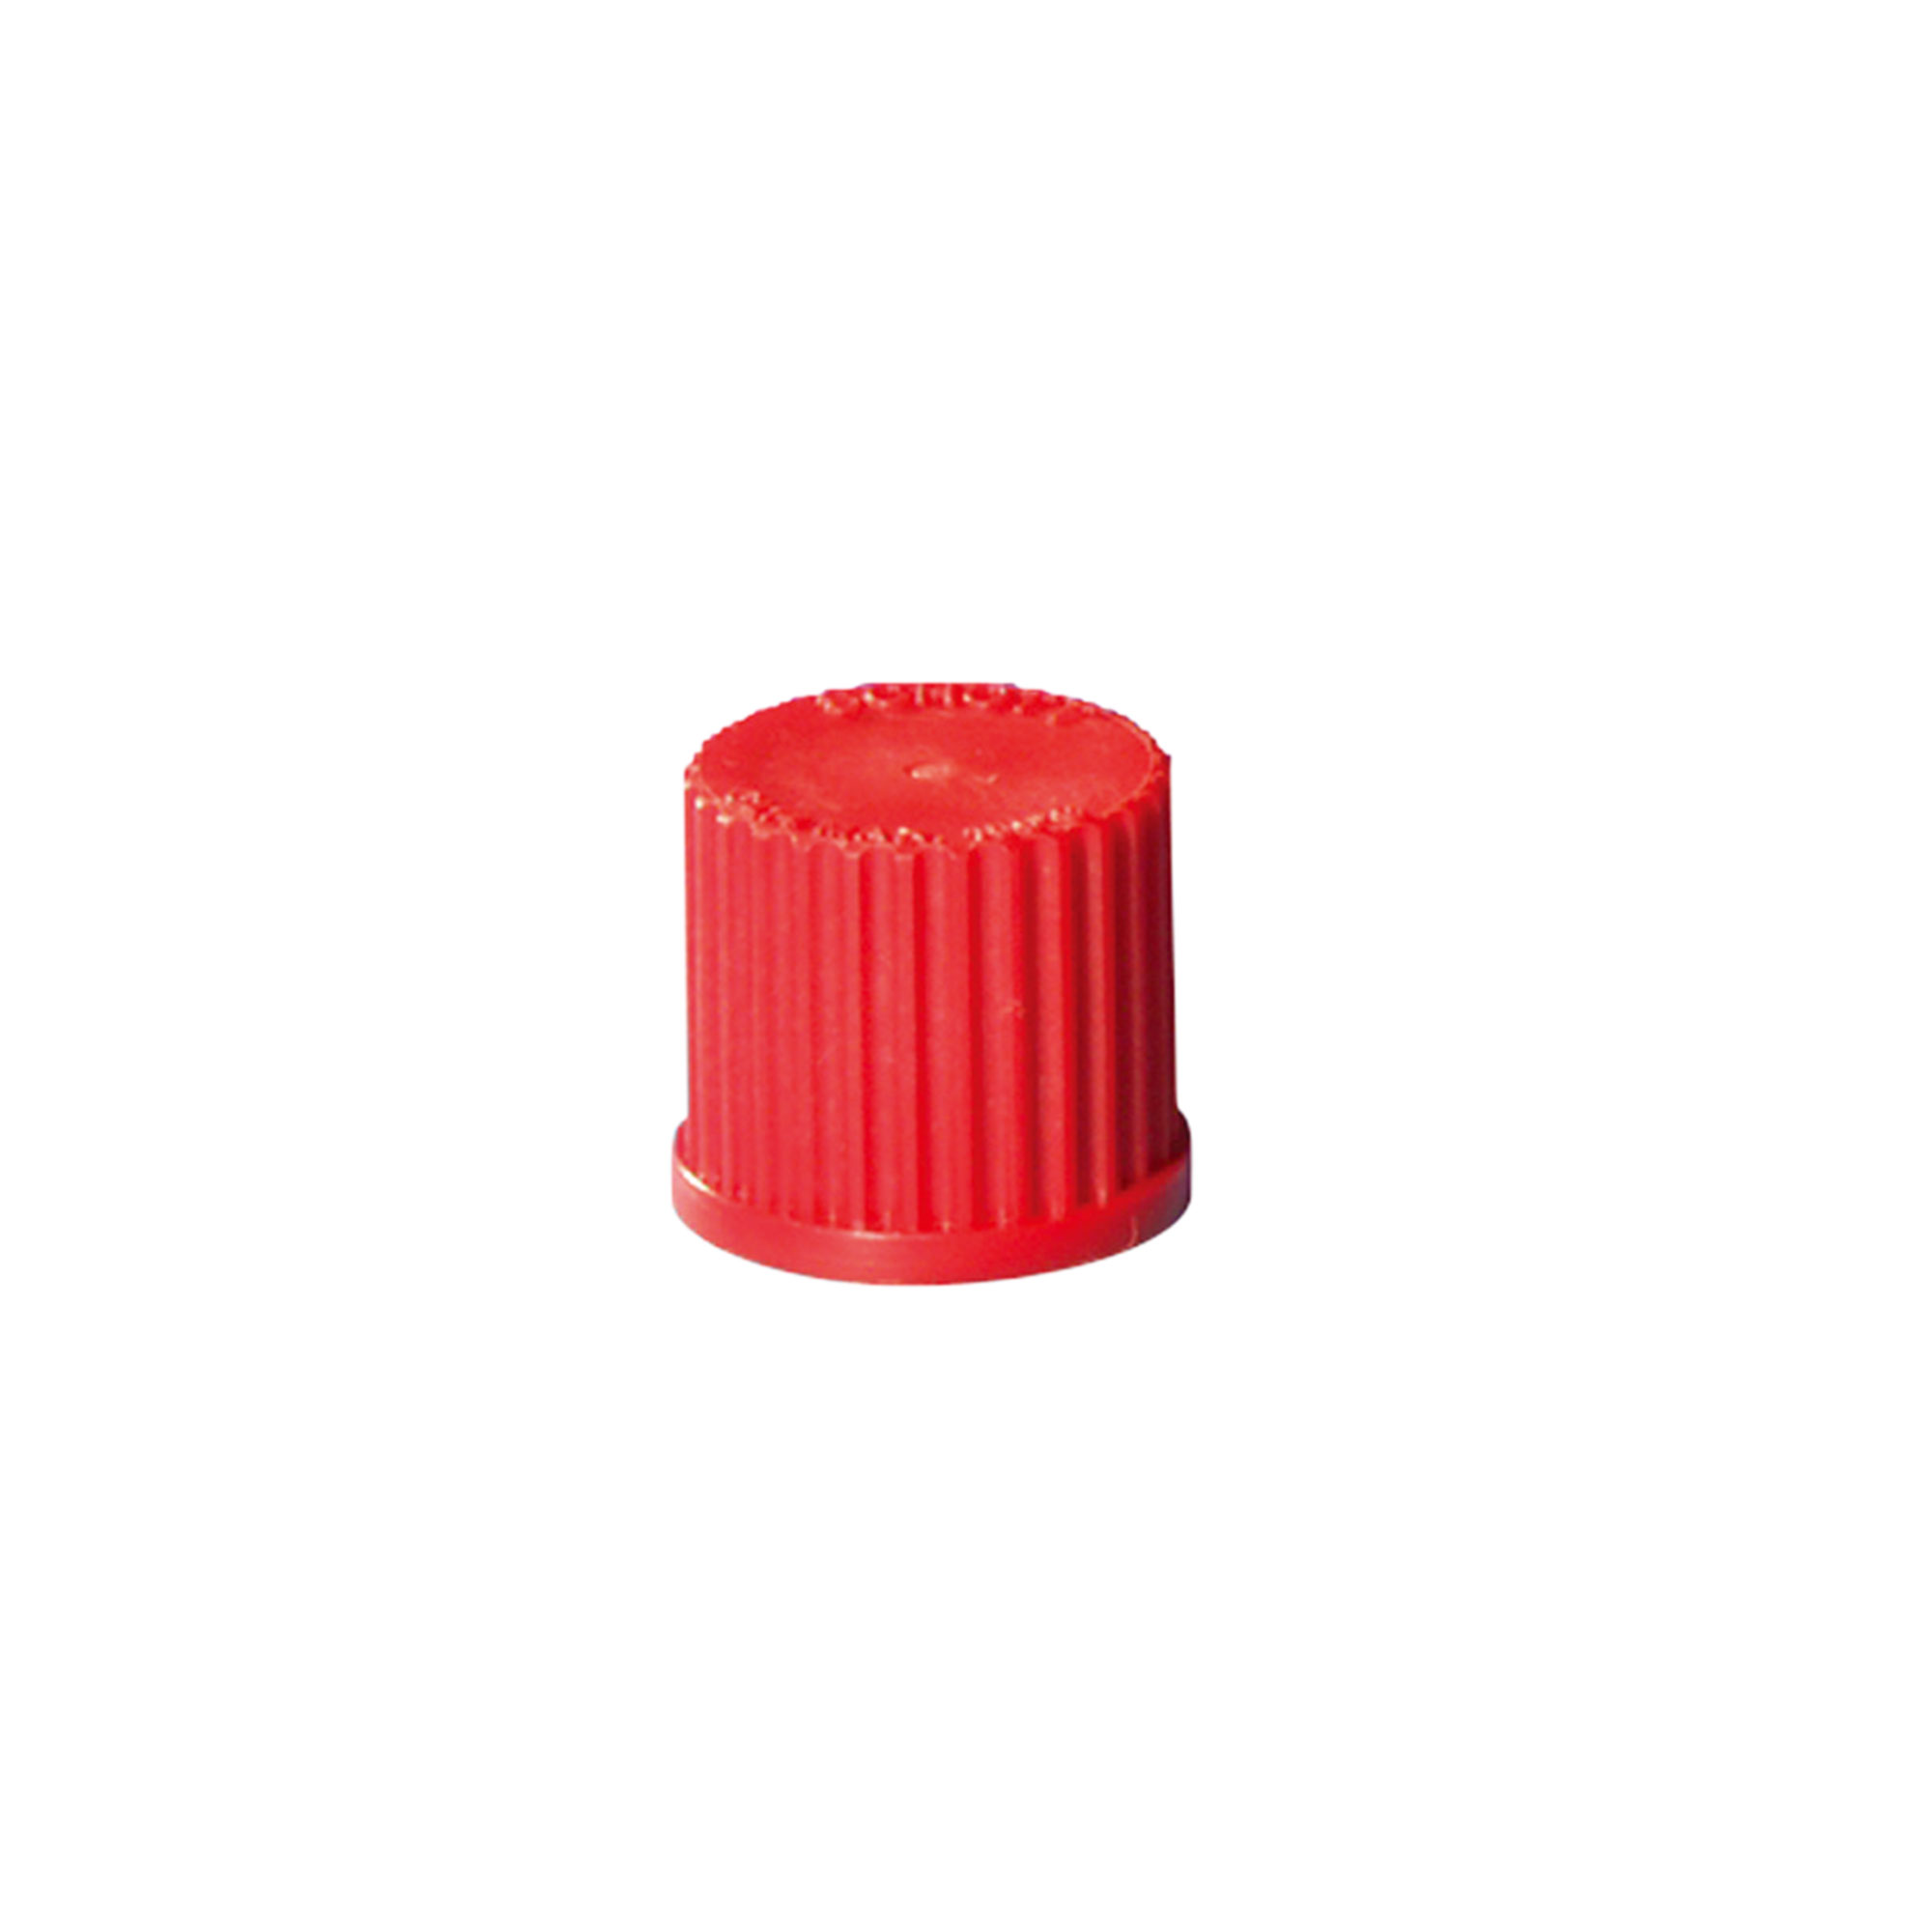 赤キャップ ねじ口びん2.3ポートキャップ用 GL-14(5個)